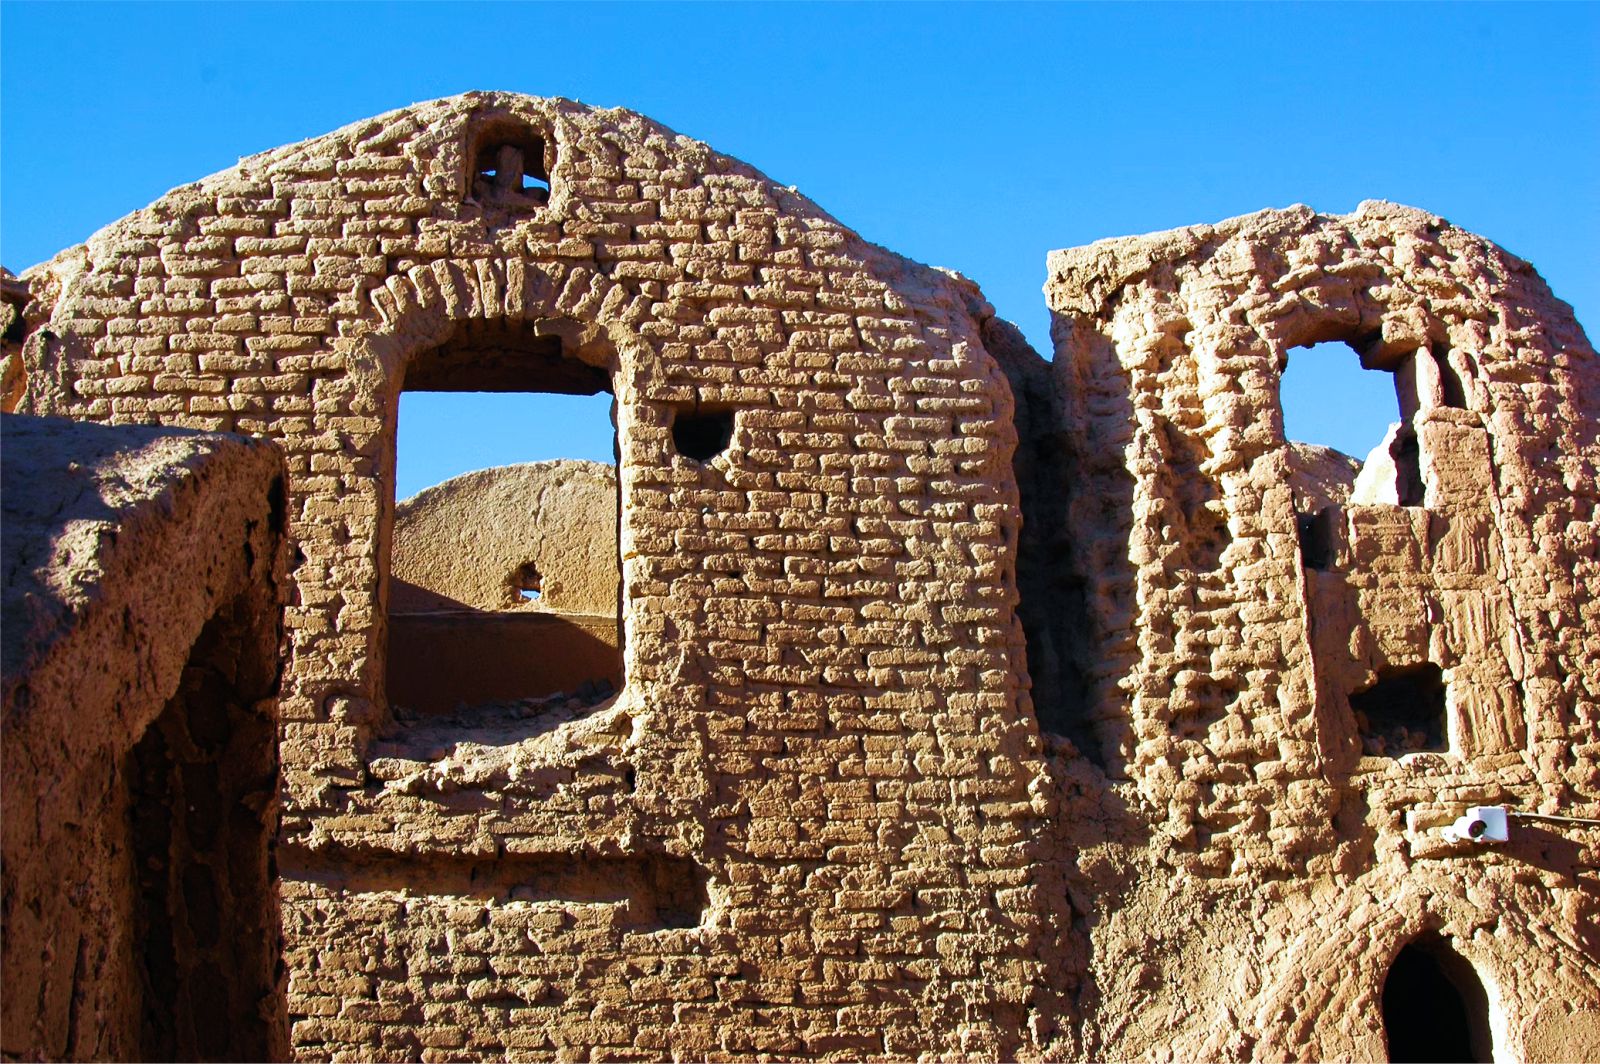  Tháp đón gió - tuyệt tác kiến trúc của thành phố sa mạc Yazd  - Ảnh 3.